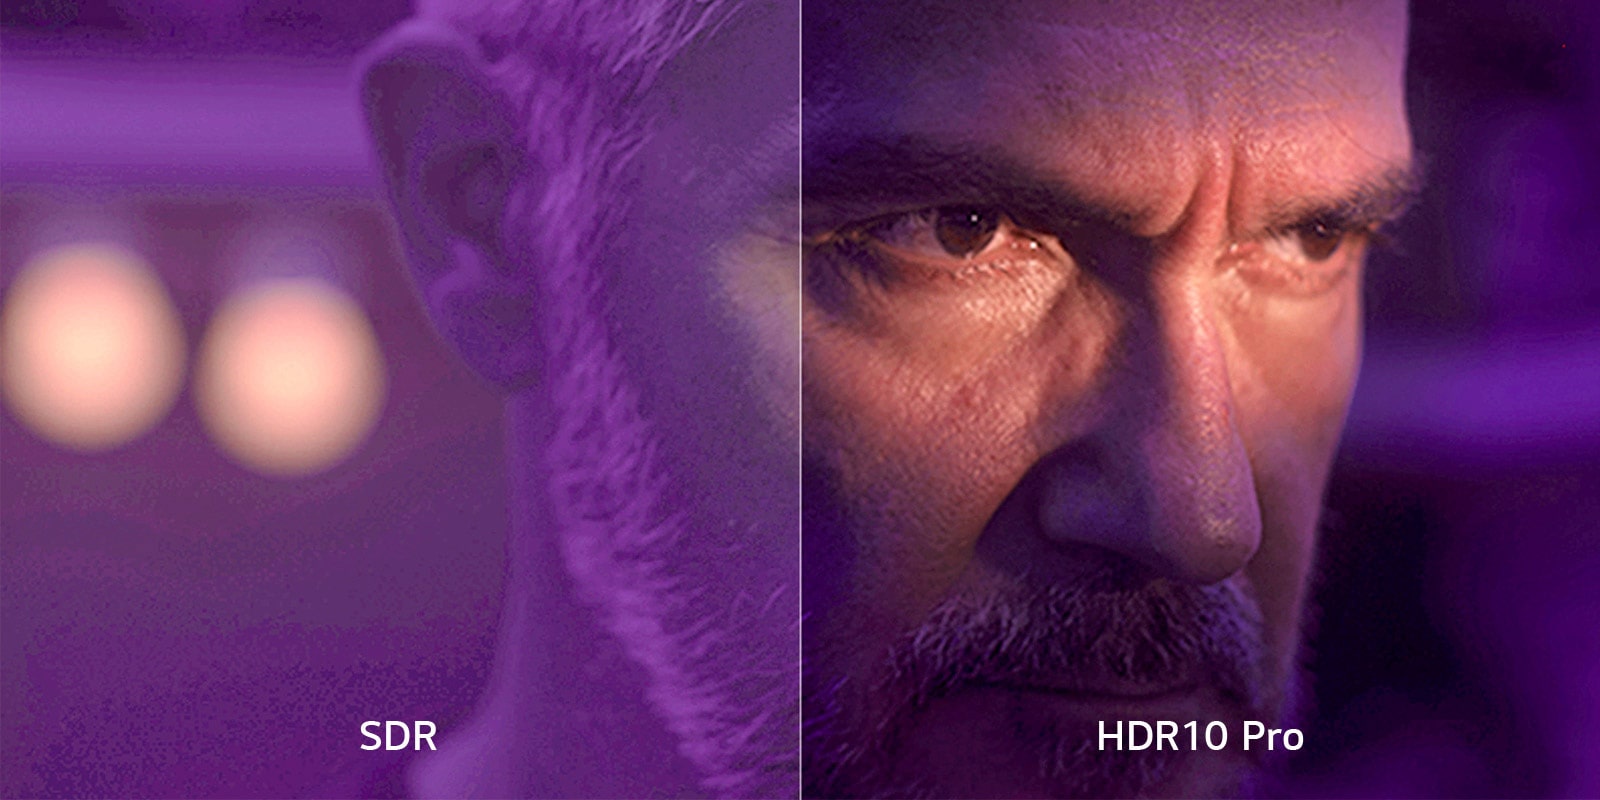 На разделенном экране крупным планом показано лицо мужчины в затемненной комнате с фиолетовыми оттенками. Слева отображается «SDR», а изображение размыто. Справа отображается «HDR10 Pro», а изображение четкое и резко очерченное.